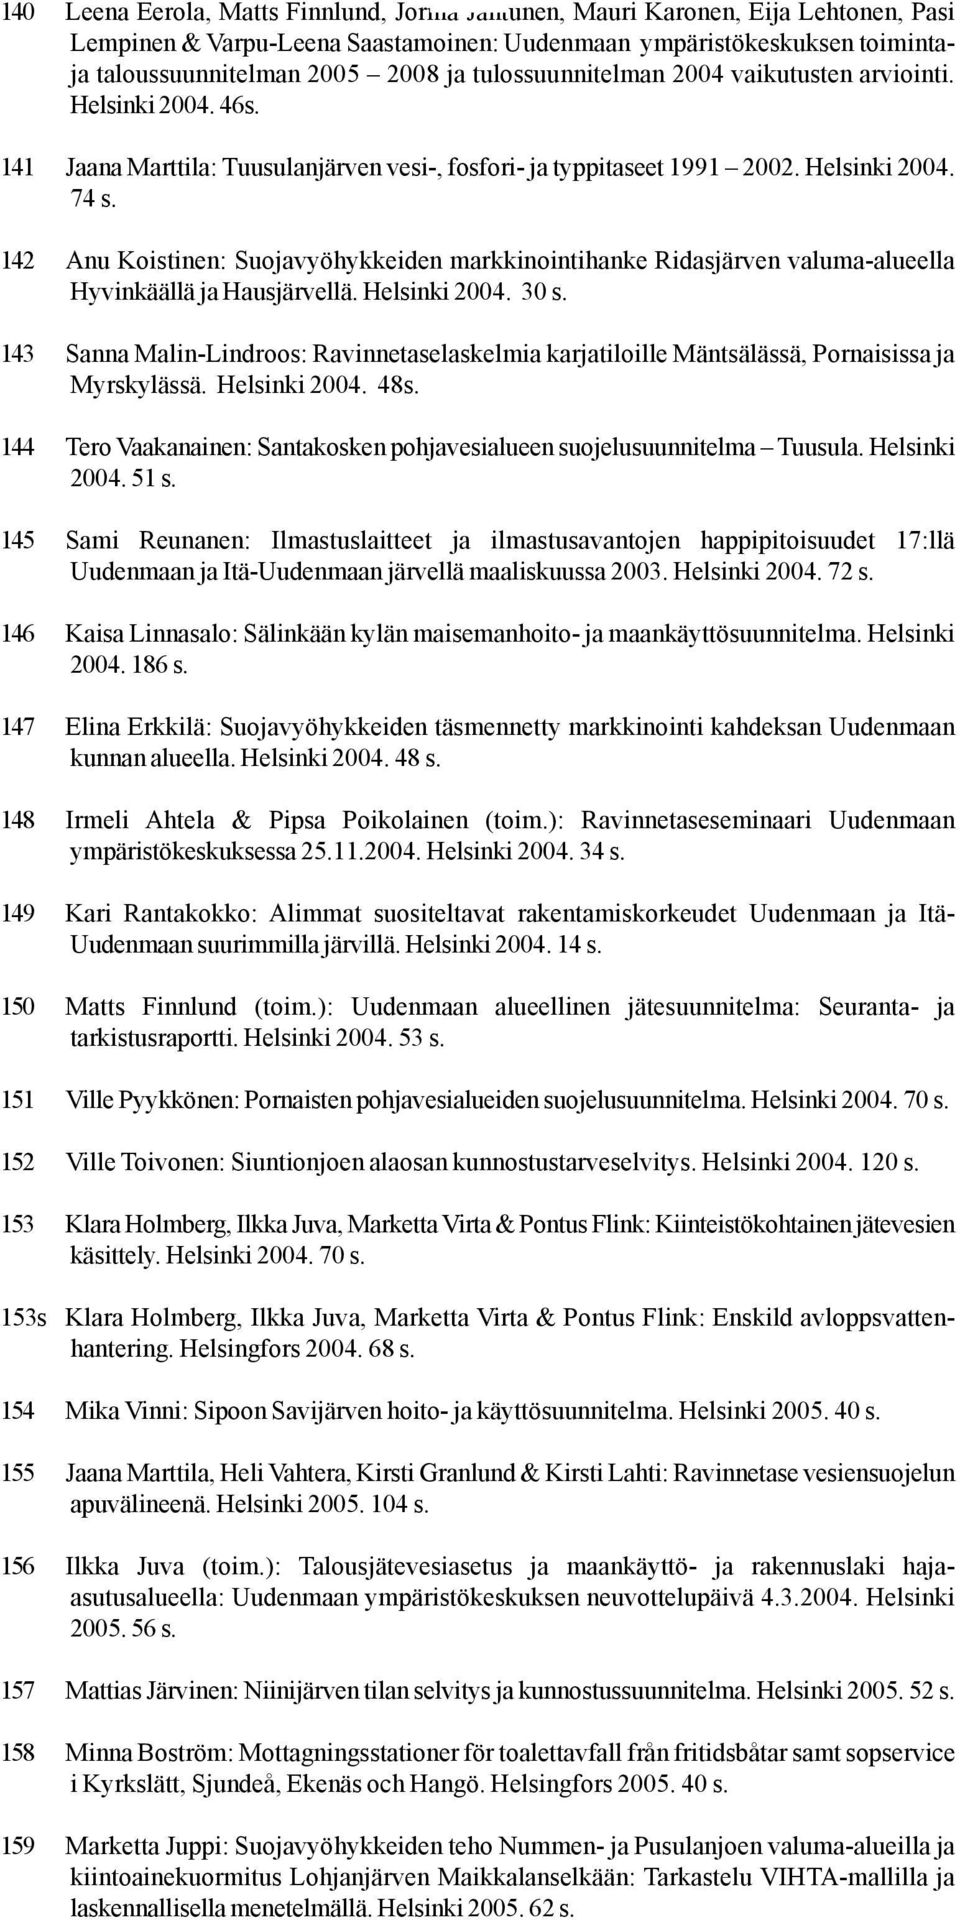 142 Anu Koistinen: Suojavyöhykkeiden markkinointihanke Ridasjärven valuma-alueella Hyvinkäällä ja Hausjärvellä. Helsinki 2004. 30 s.